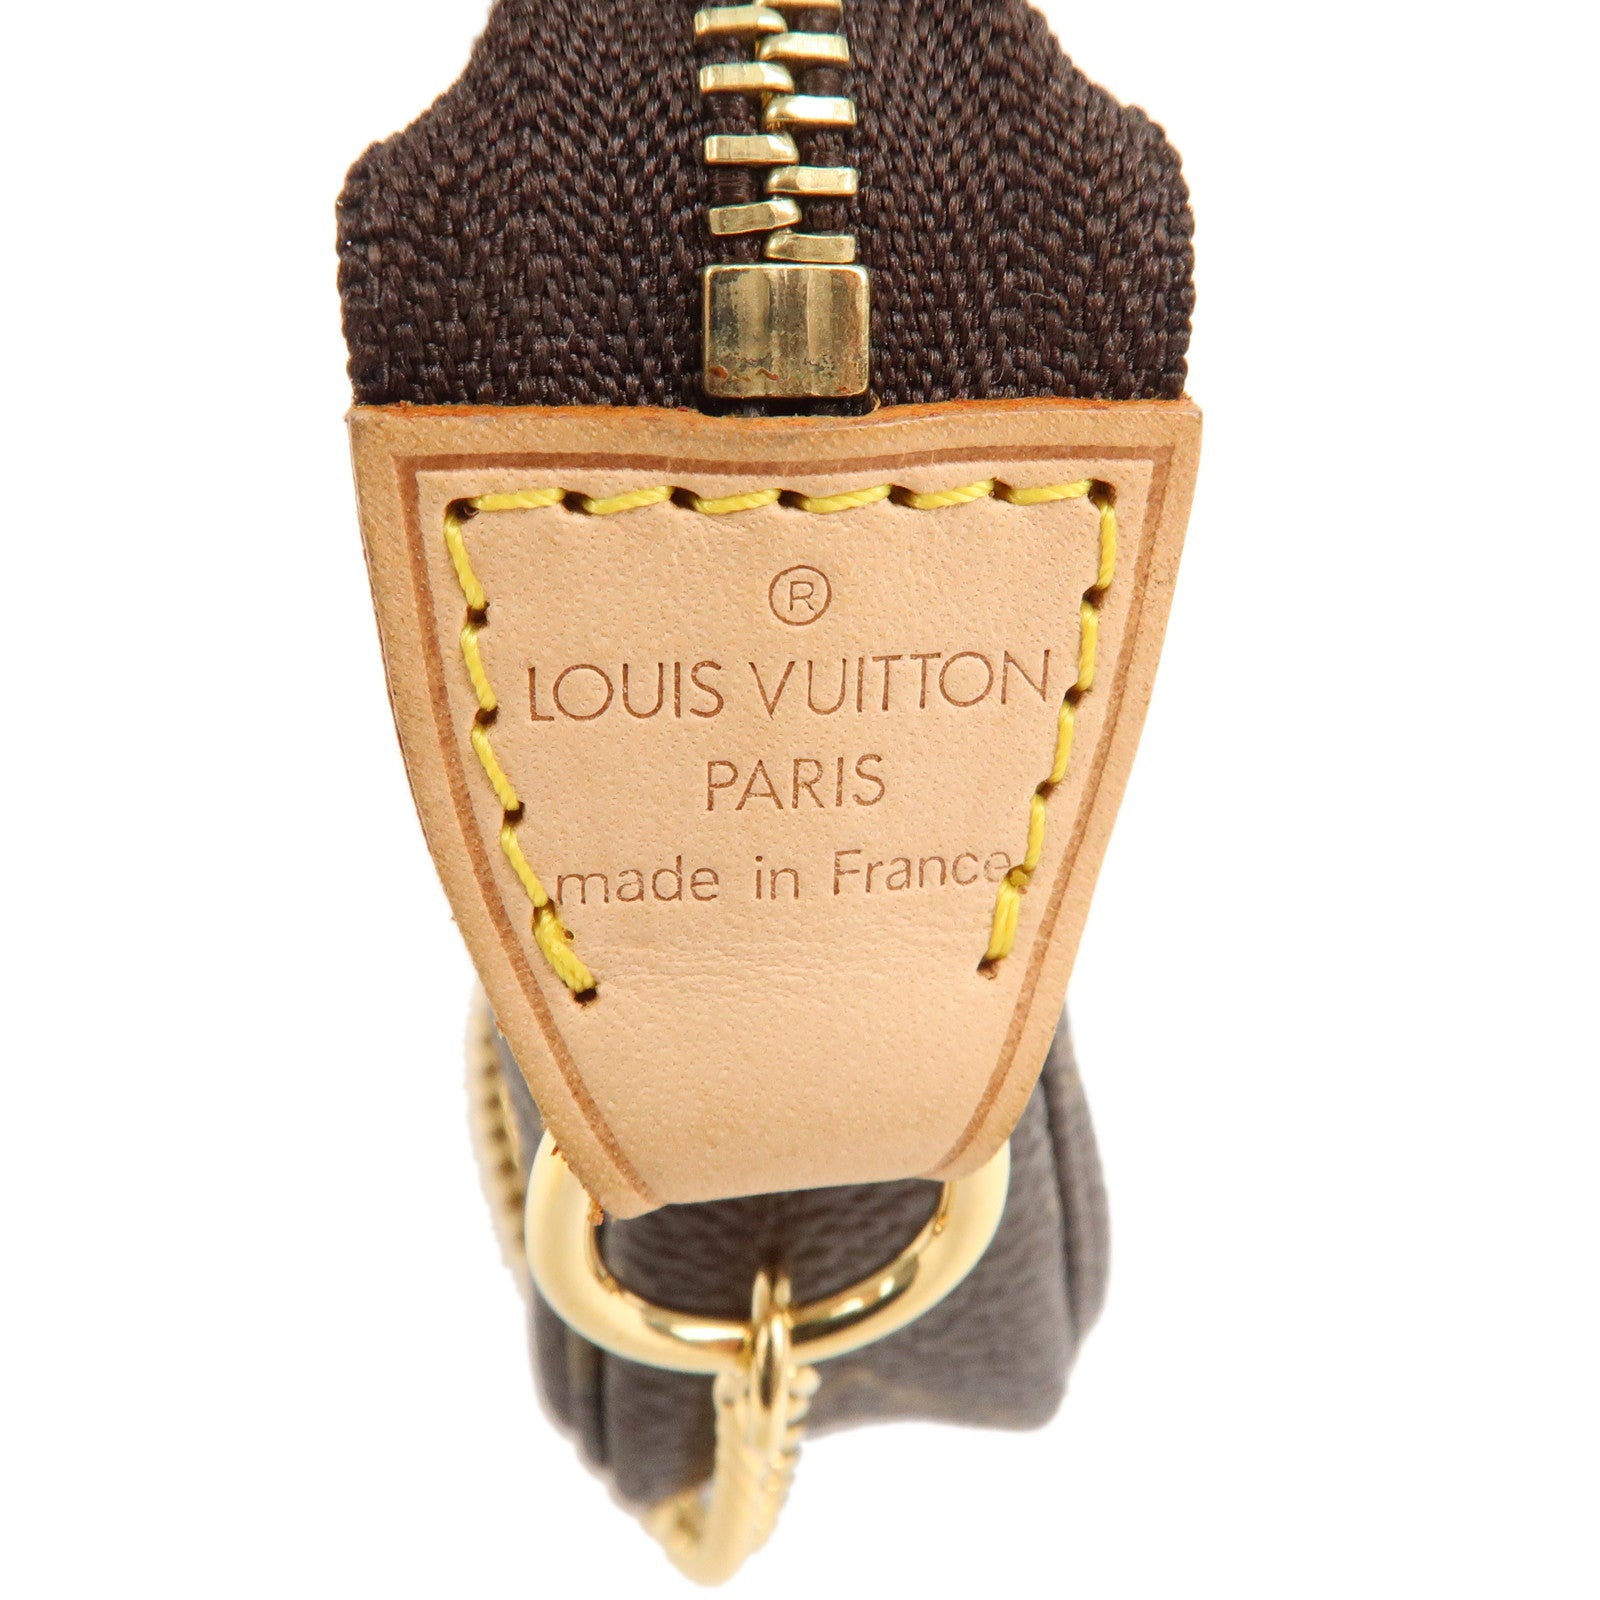 Auth Louis Vuitton Monogram Mini Pochette Accessoires Pouch M58009 Used